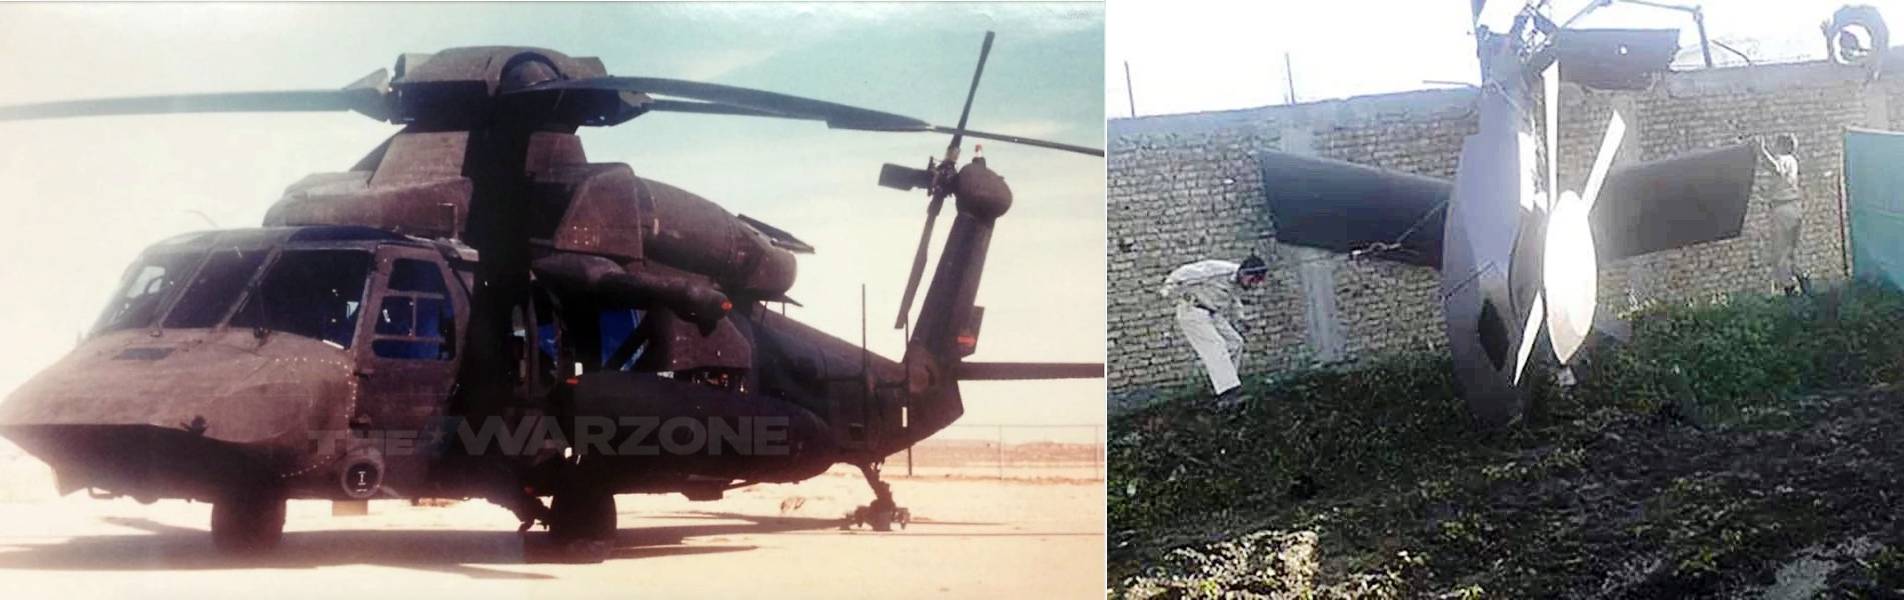 빈 라덴 제거 작전의 주력헬기는 MH-47이 아니라 일명 '사일런트 호크' 스텔스 헬기였다. <출처: The Drive, Public Domain>